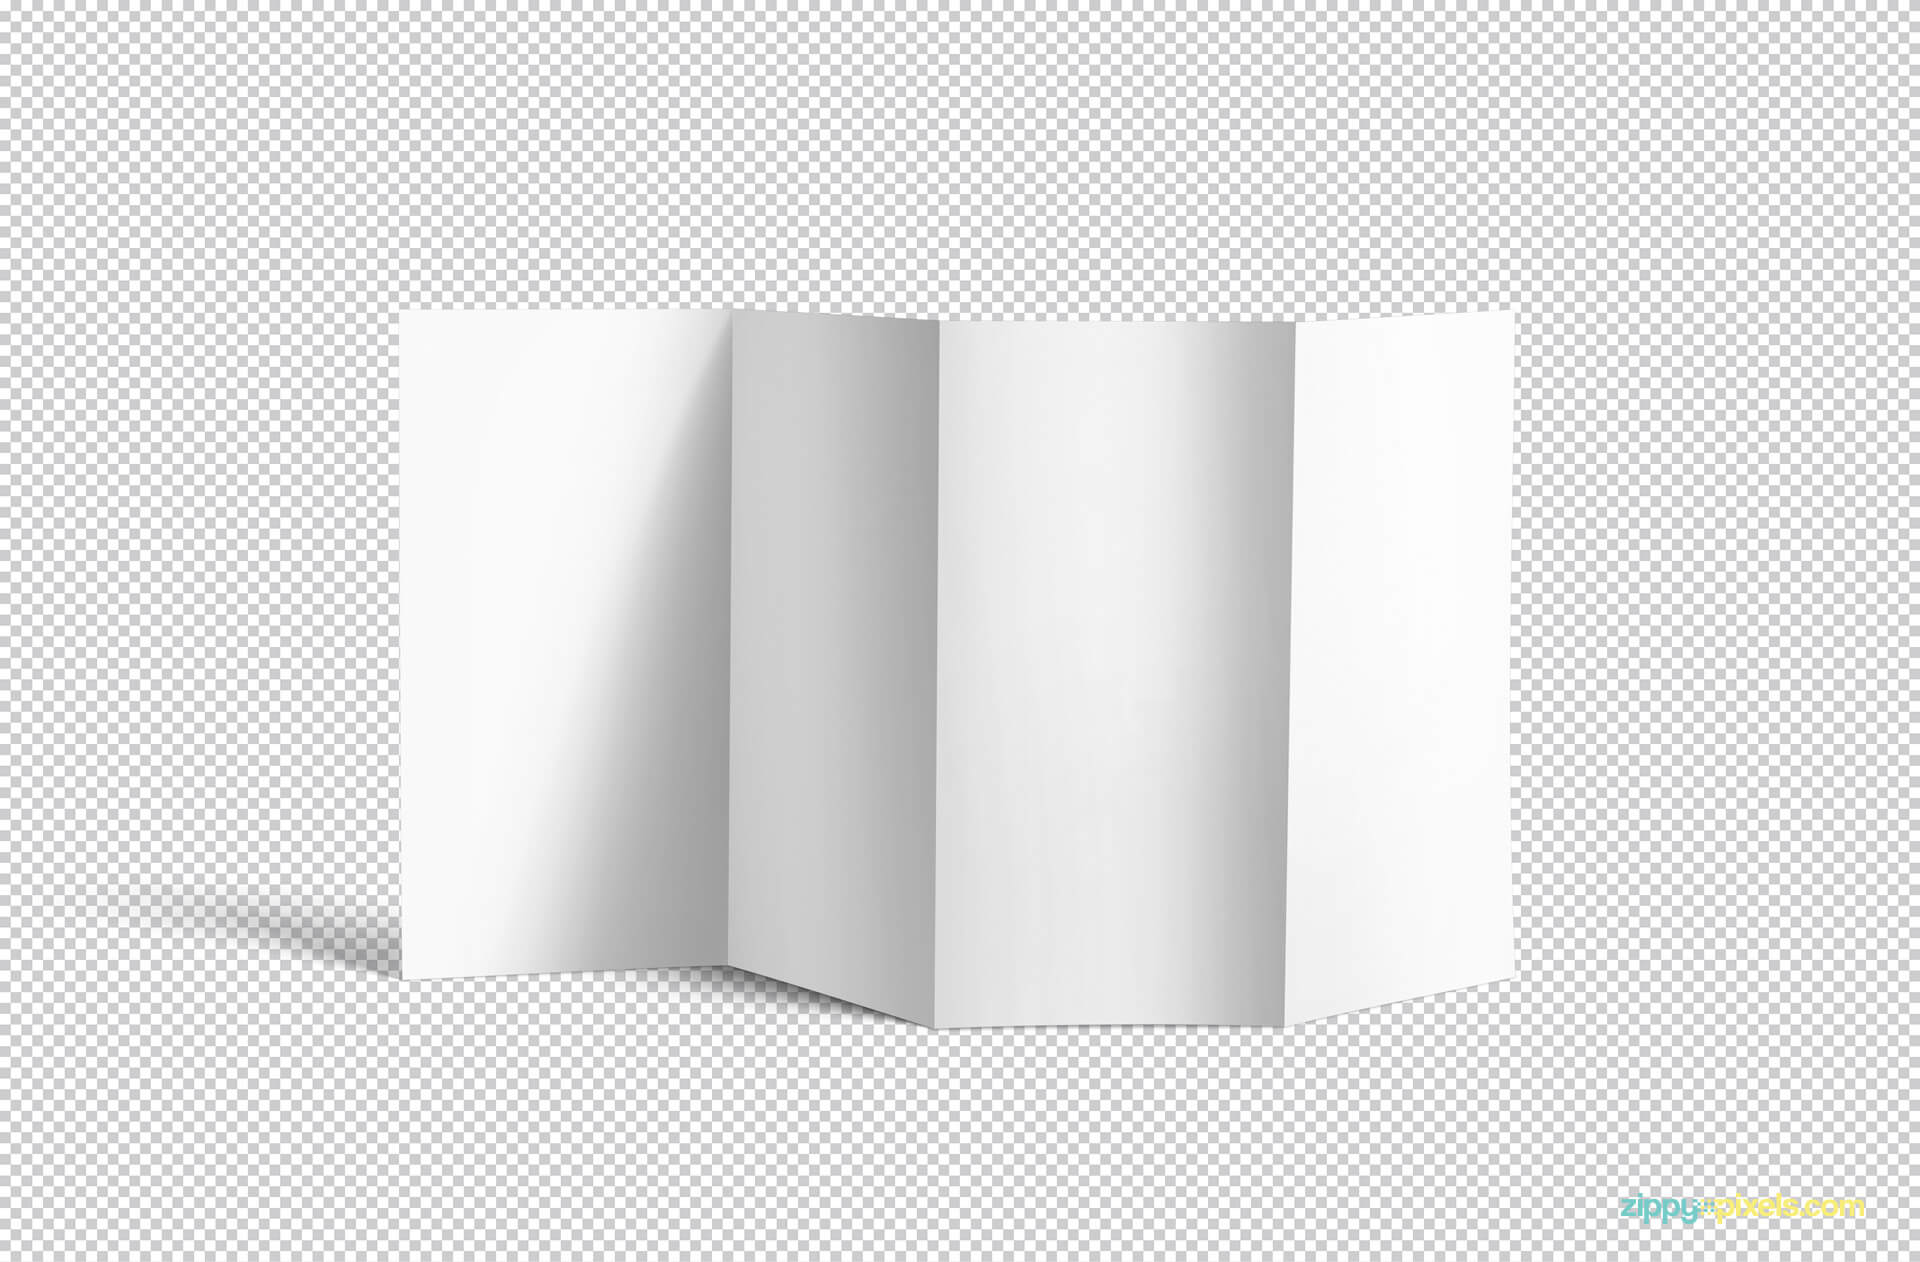 Free 4 Fold Brochure Mockup | Zippypixels In 4 Fold Brochure Template Word